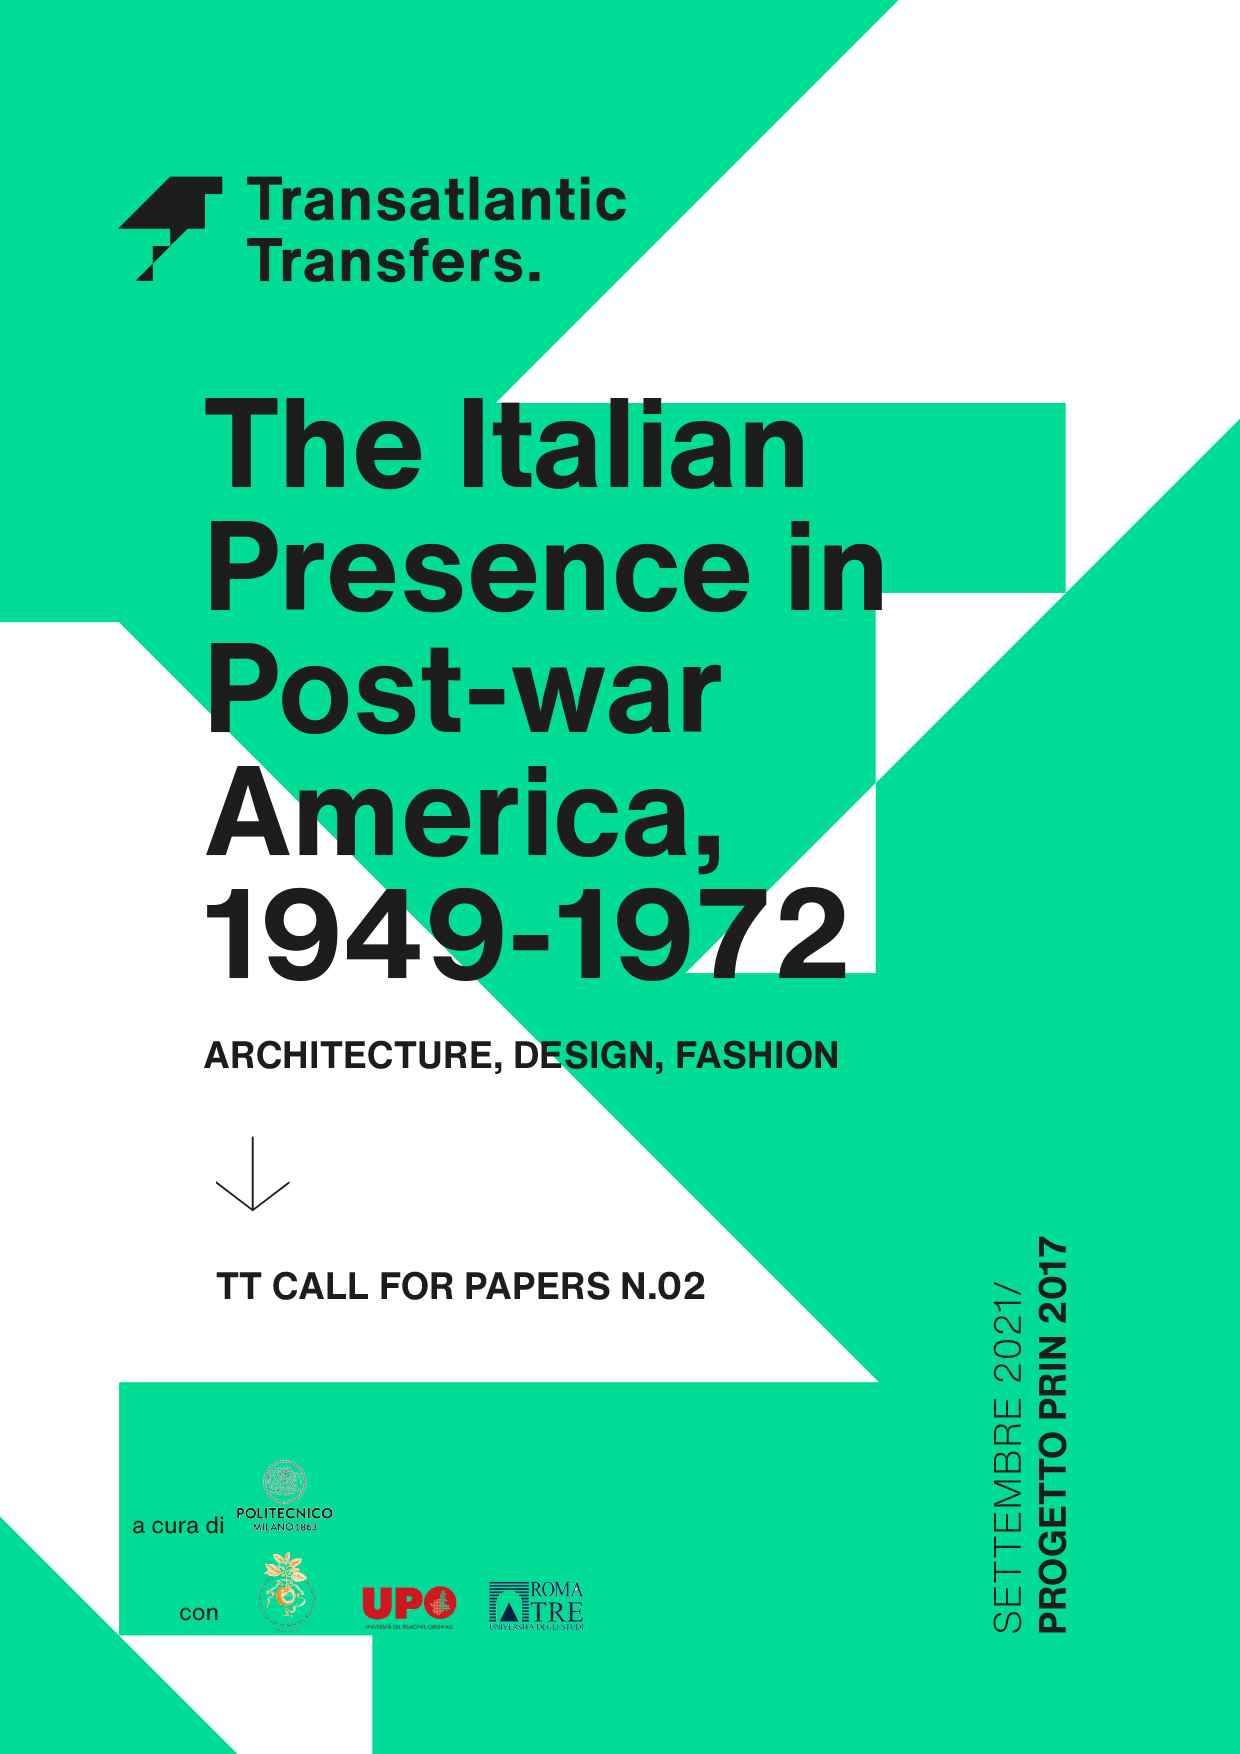 The Italian Presence in Post-war America, 1949-1972. Architecture, design, fashion